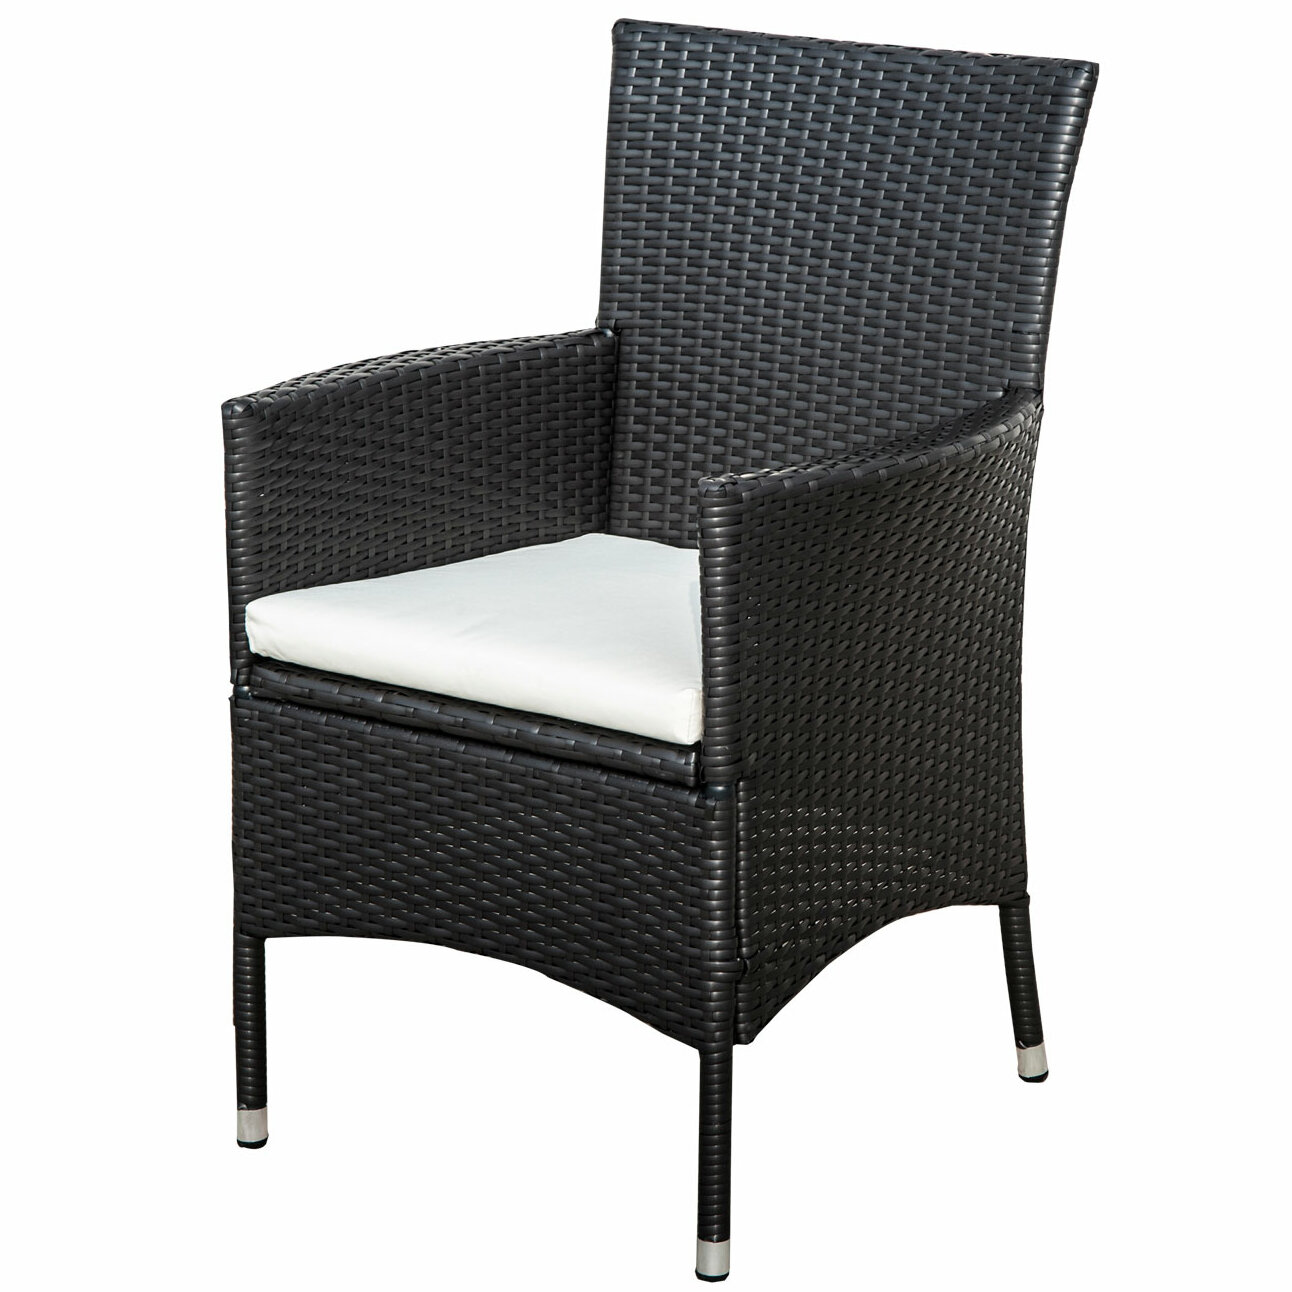 Brown Rattan Garden Chair Premium Poly Weave Stackable Outdoor